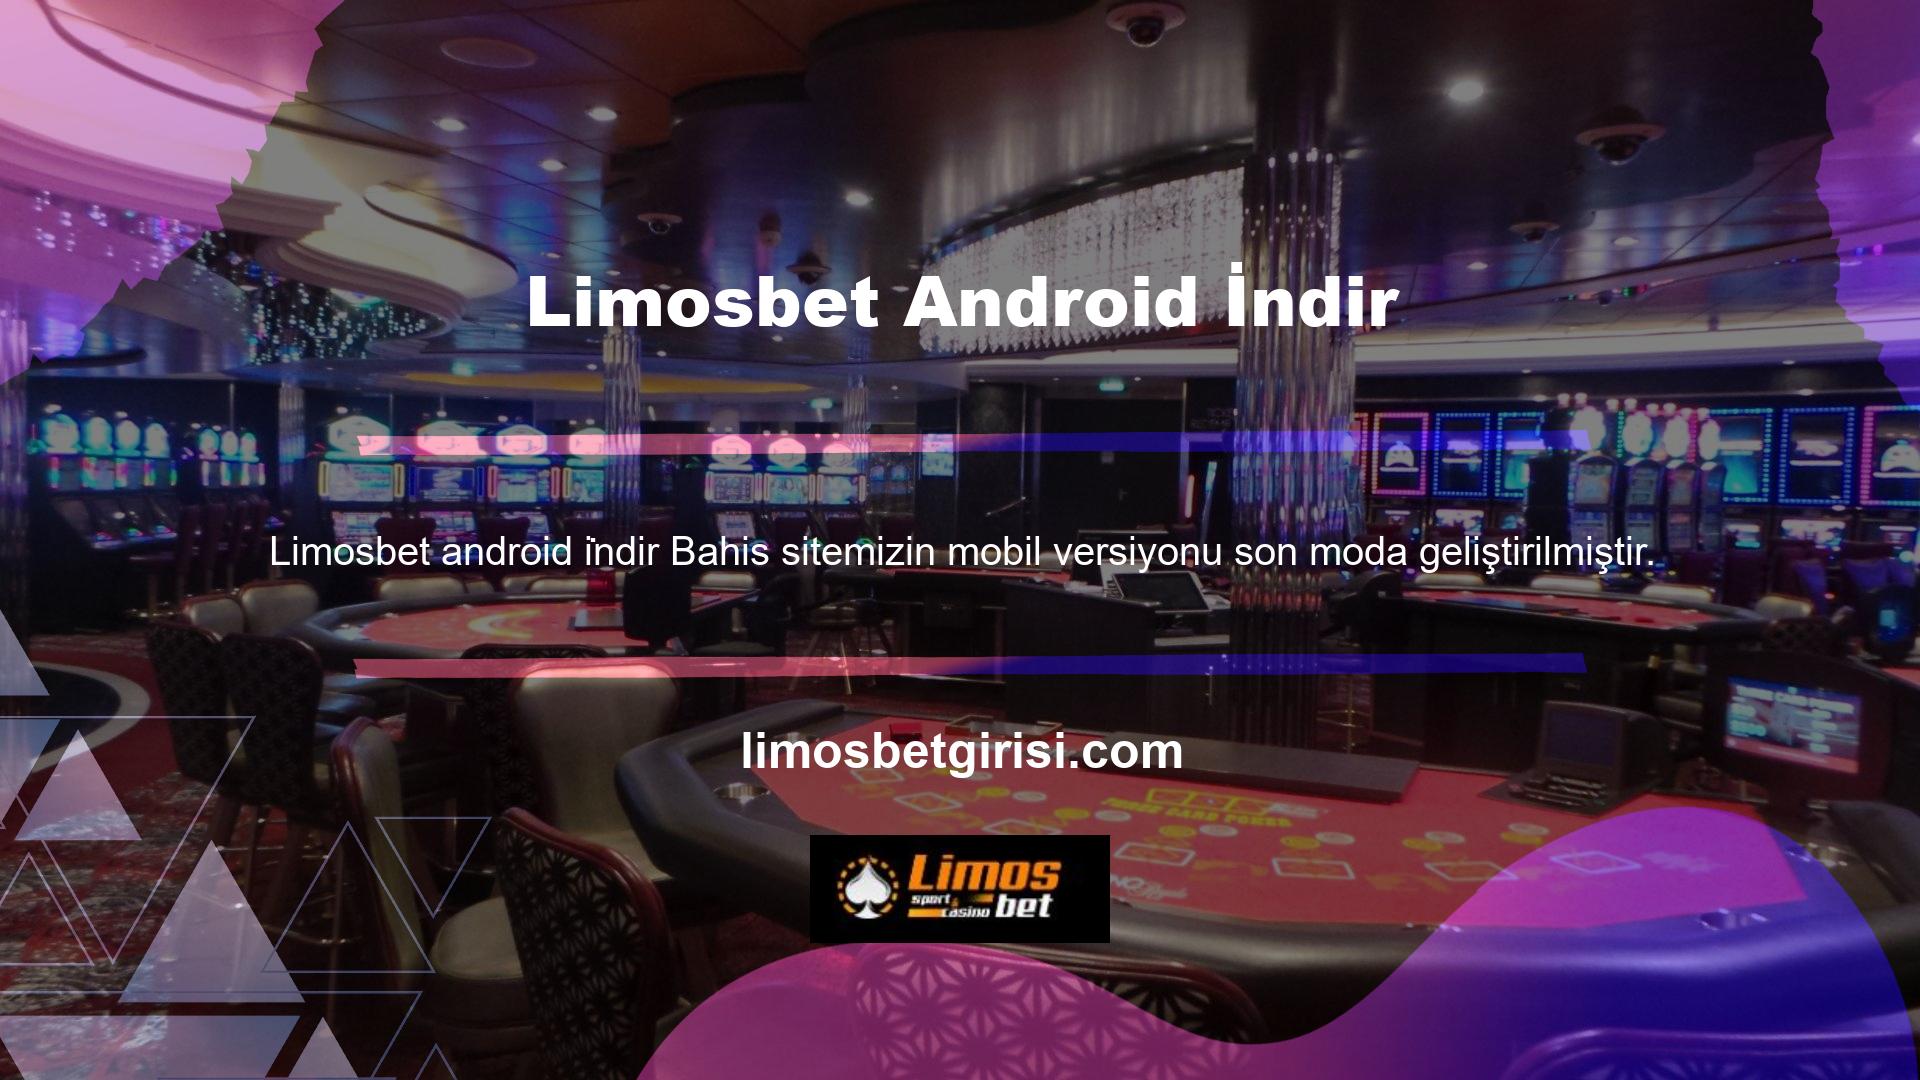 Limosbet mobil versiyonu, kullanıcıların siteye sorunsuz bir şekilde erişmelerini, oyun izlemelerini ve anında para kazanmalarını sağlamak için tasarlanmıştır